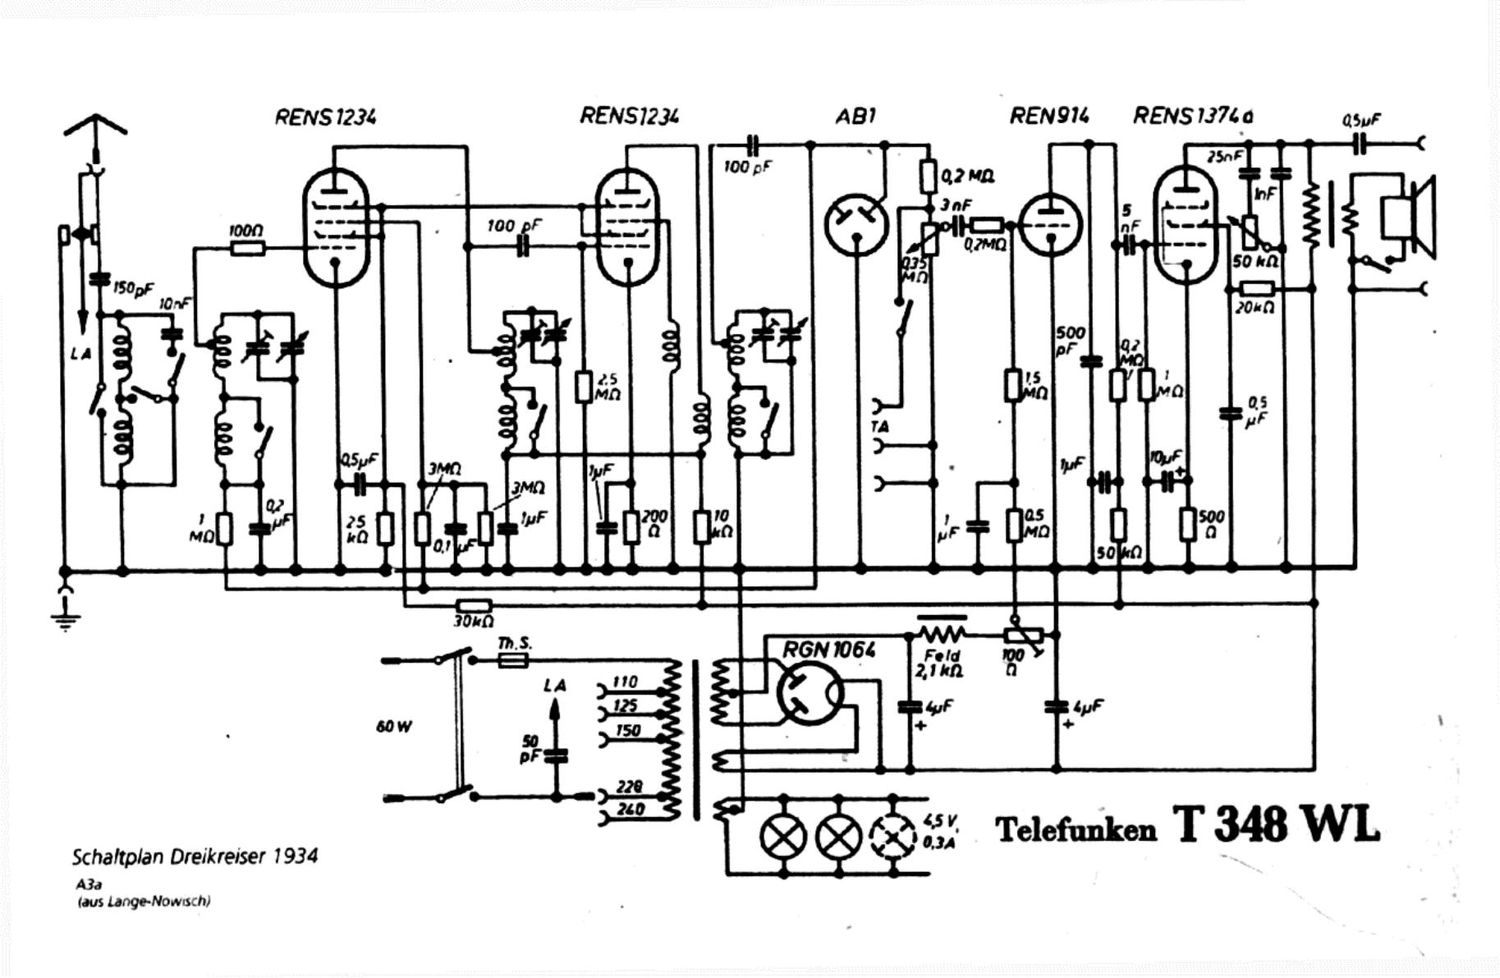 Telefunken T 348 WL Schematic